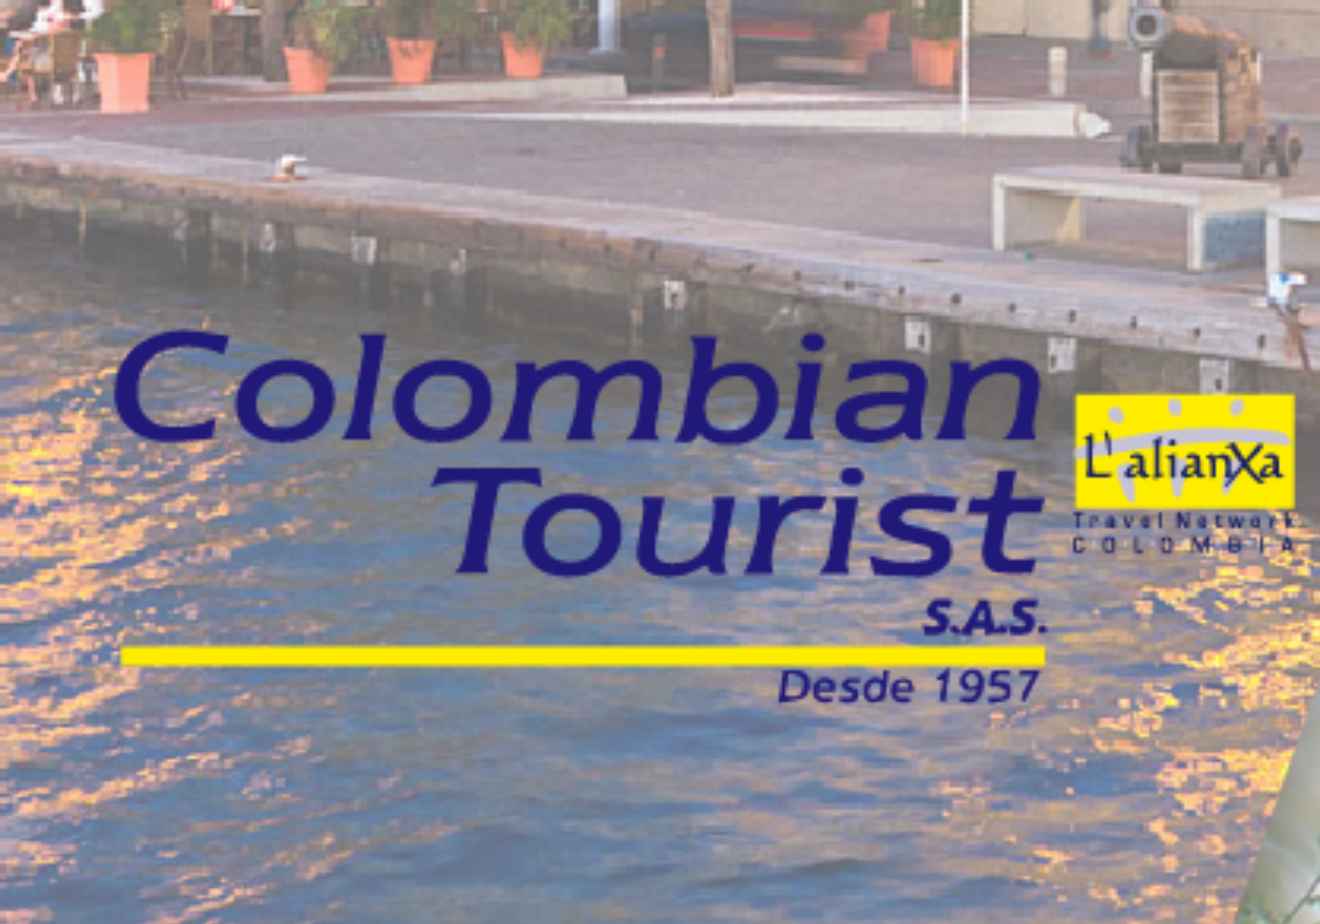 Imagen publicitaria de la empresa Colombian Tourist, que se usa como ejemplo de políticas de servicio al cliente. 